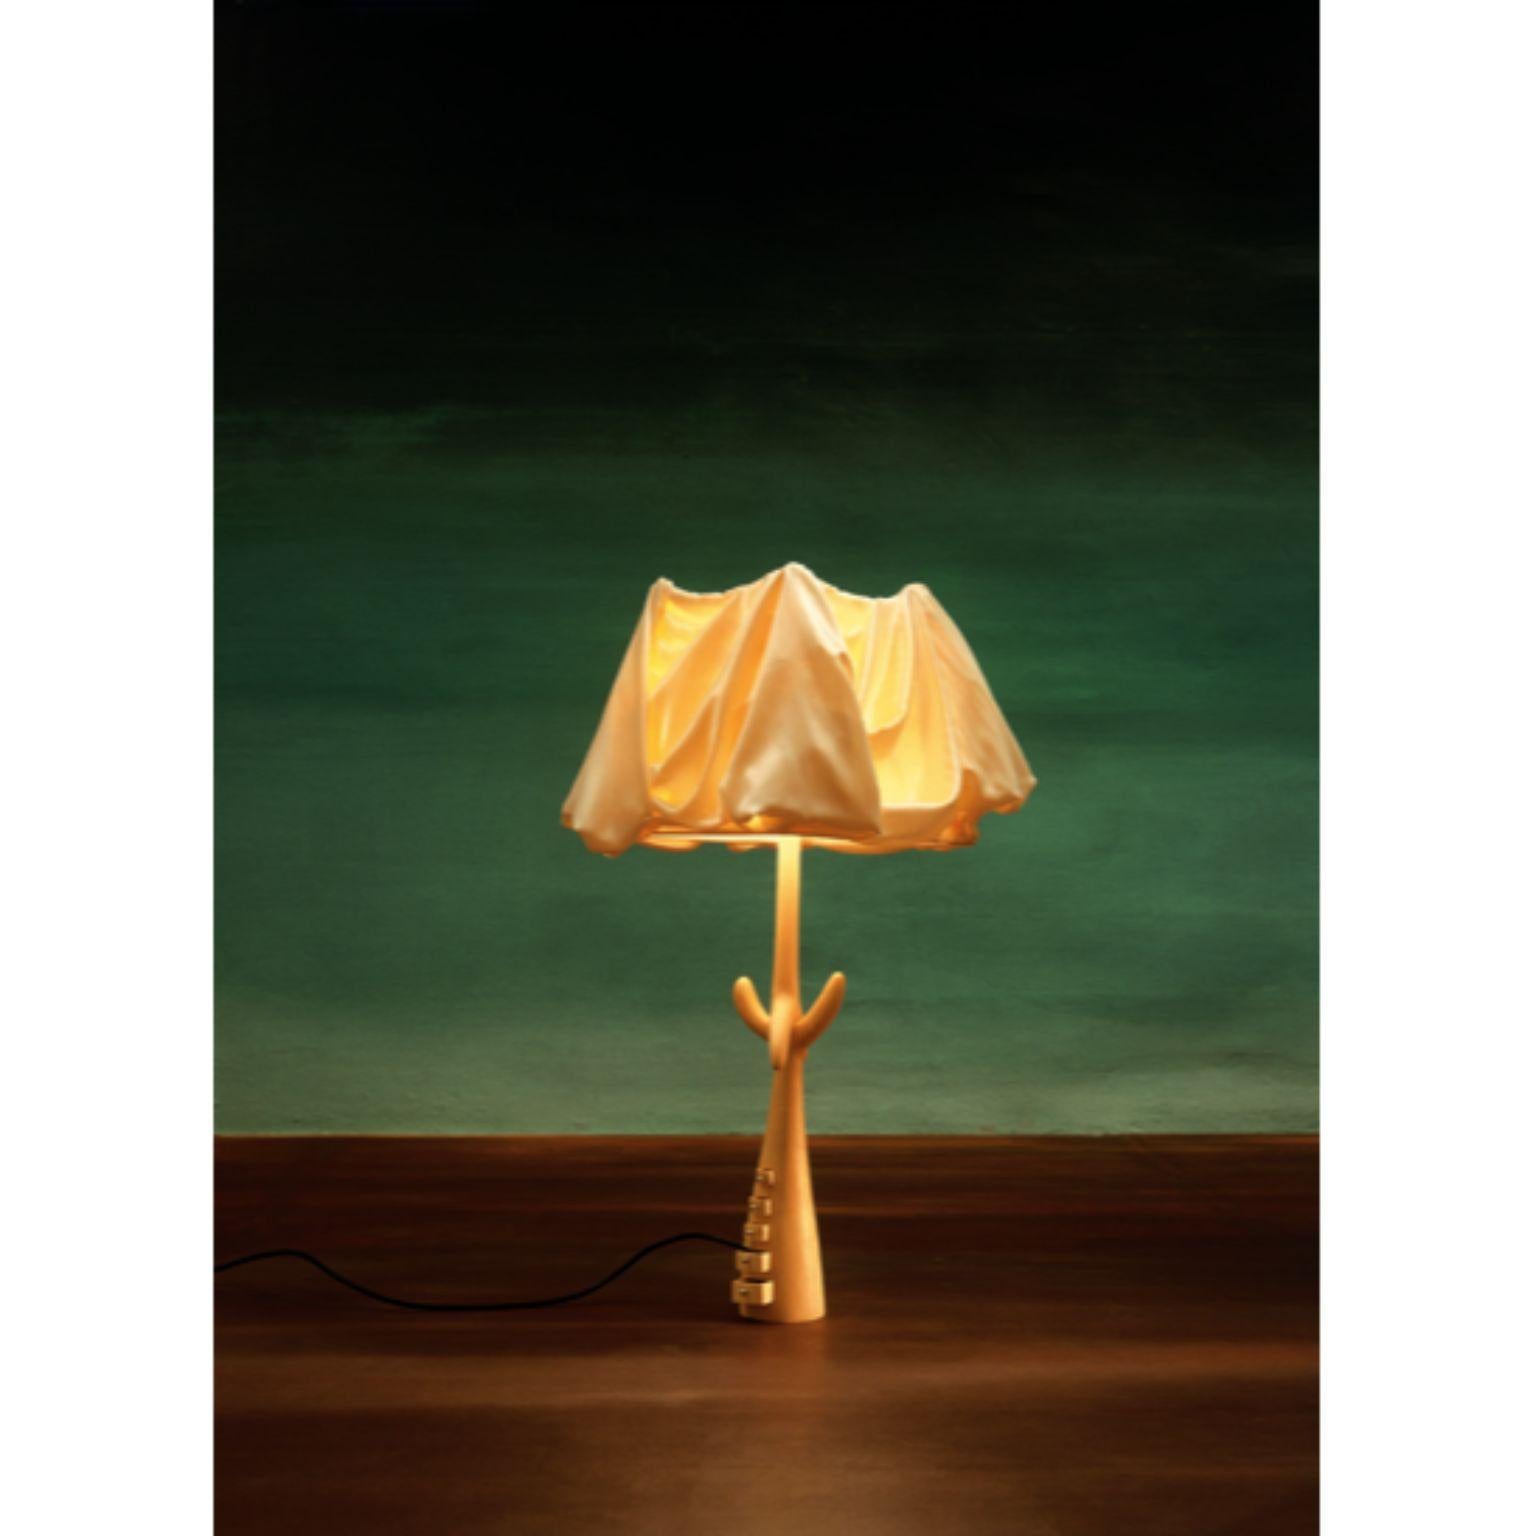 Lampe Muletas, Salvador Dalí
Abmessungen: 30 x 30 x 87 H cm
MATERIALIEN: Geschnitzte Struktur aus hellem, lackiertem Lindenholz.
Lampenschirm aus beigem Leinen.

Die Bracelli-Lampe hat eine Struktur aus Holzbrettern, die mit einer feinen